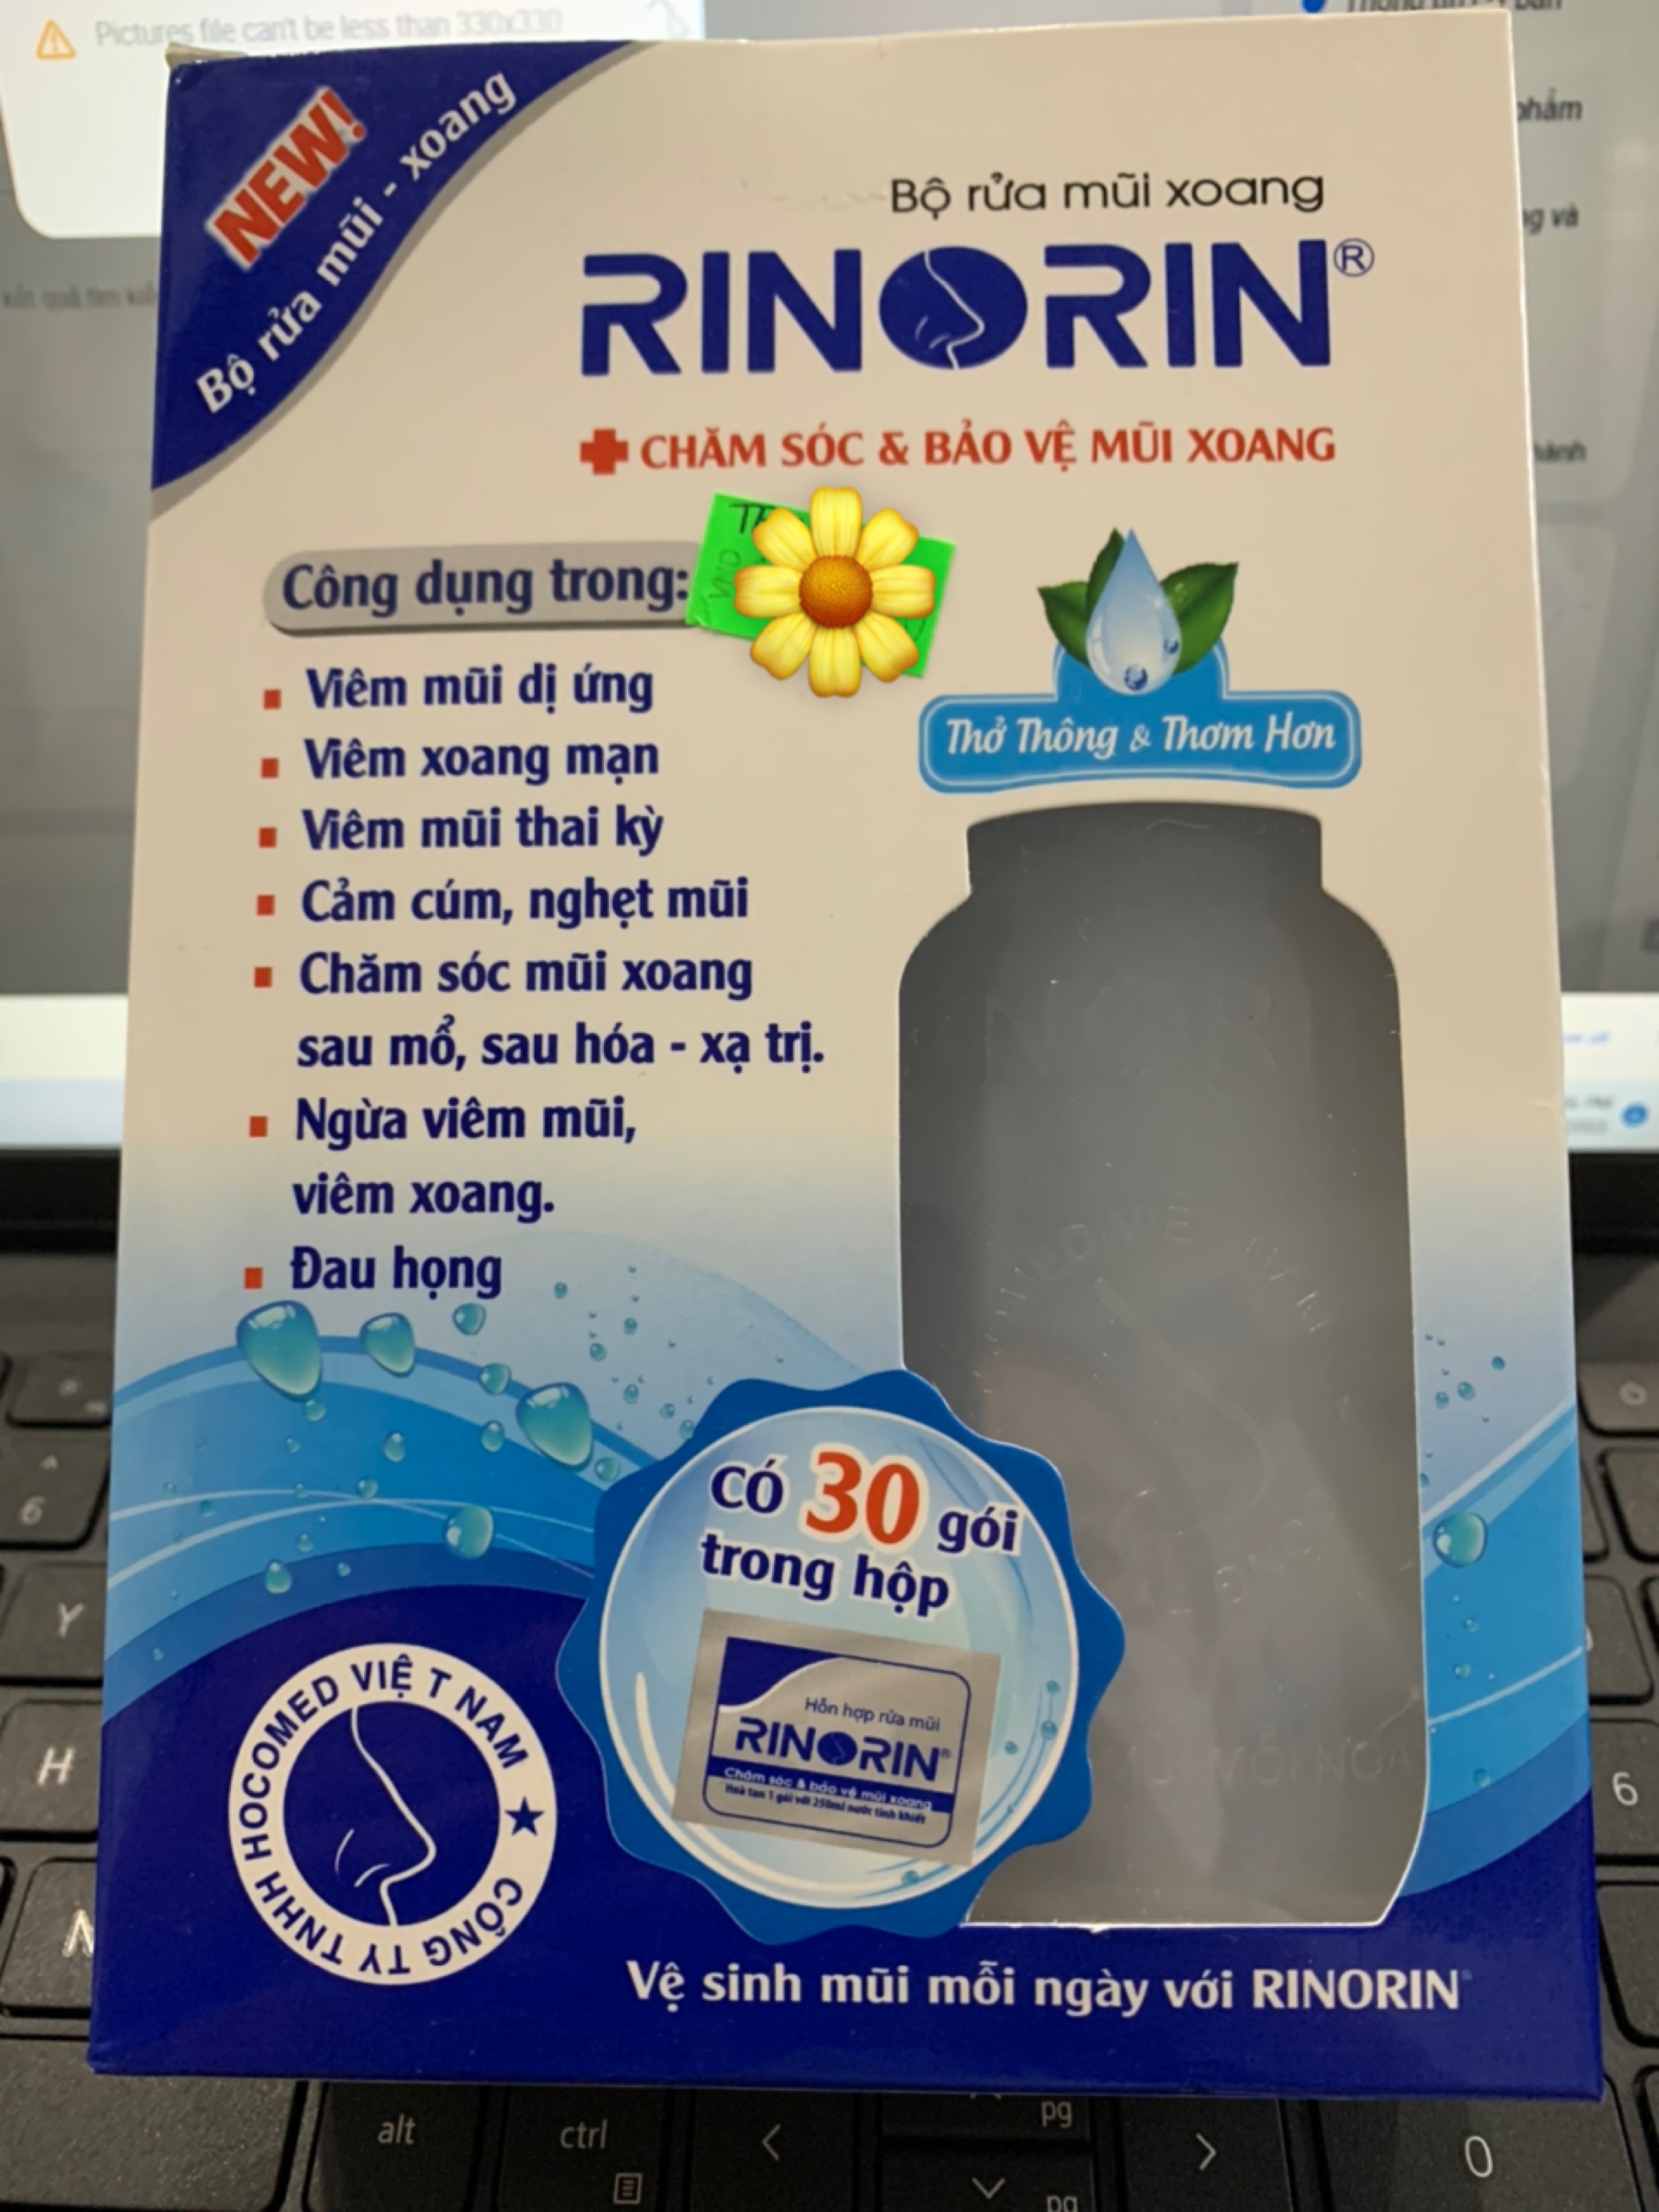 Bộ rửa mũi xoang Rinorin hỗ trợ chăm sóc mũi xoang